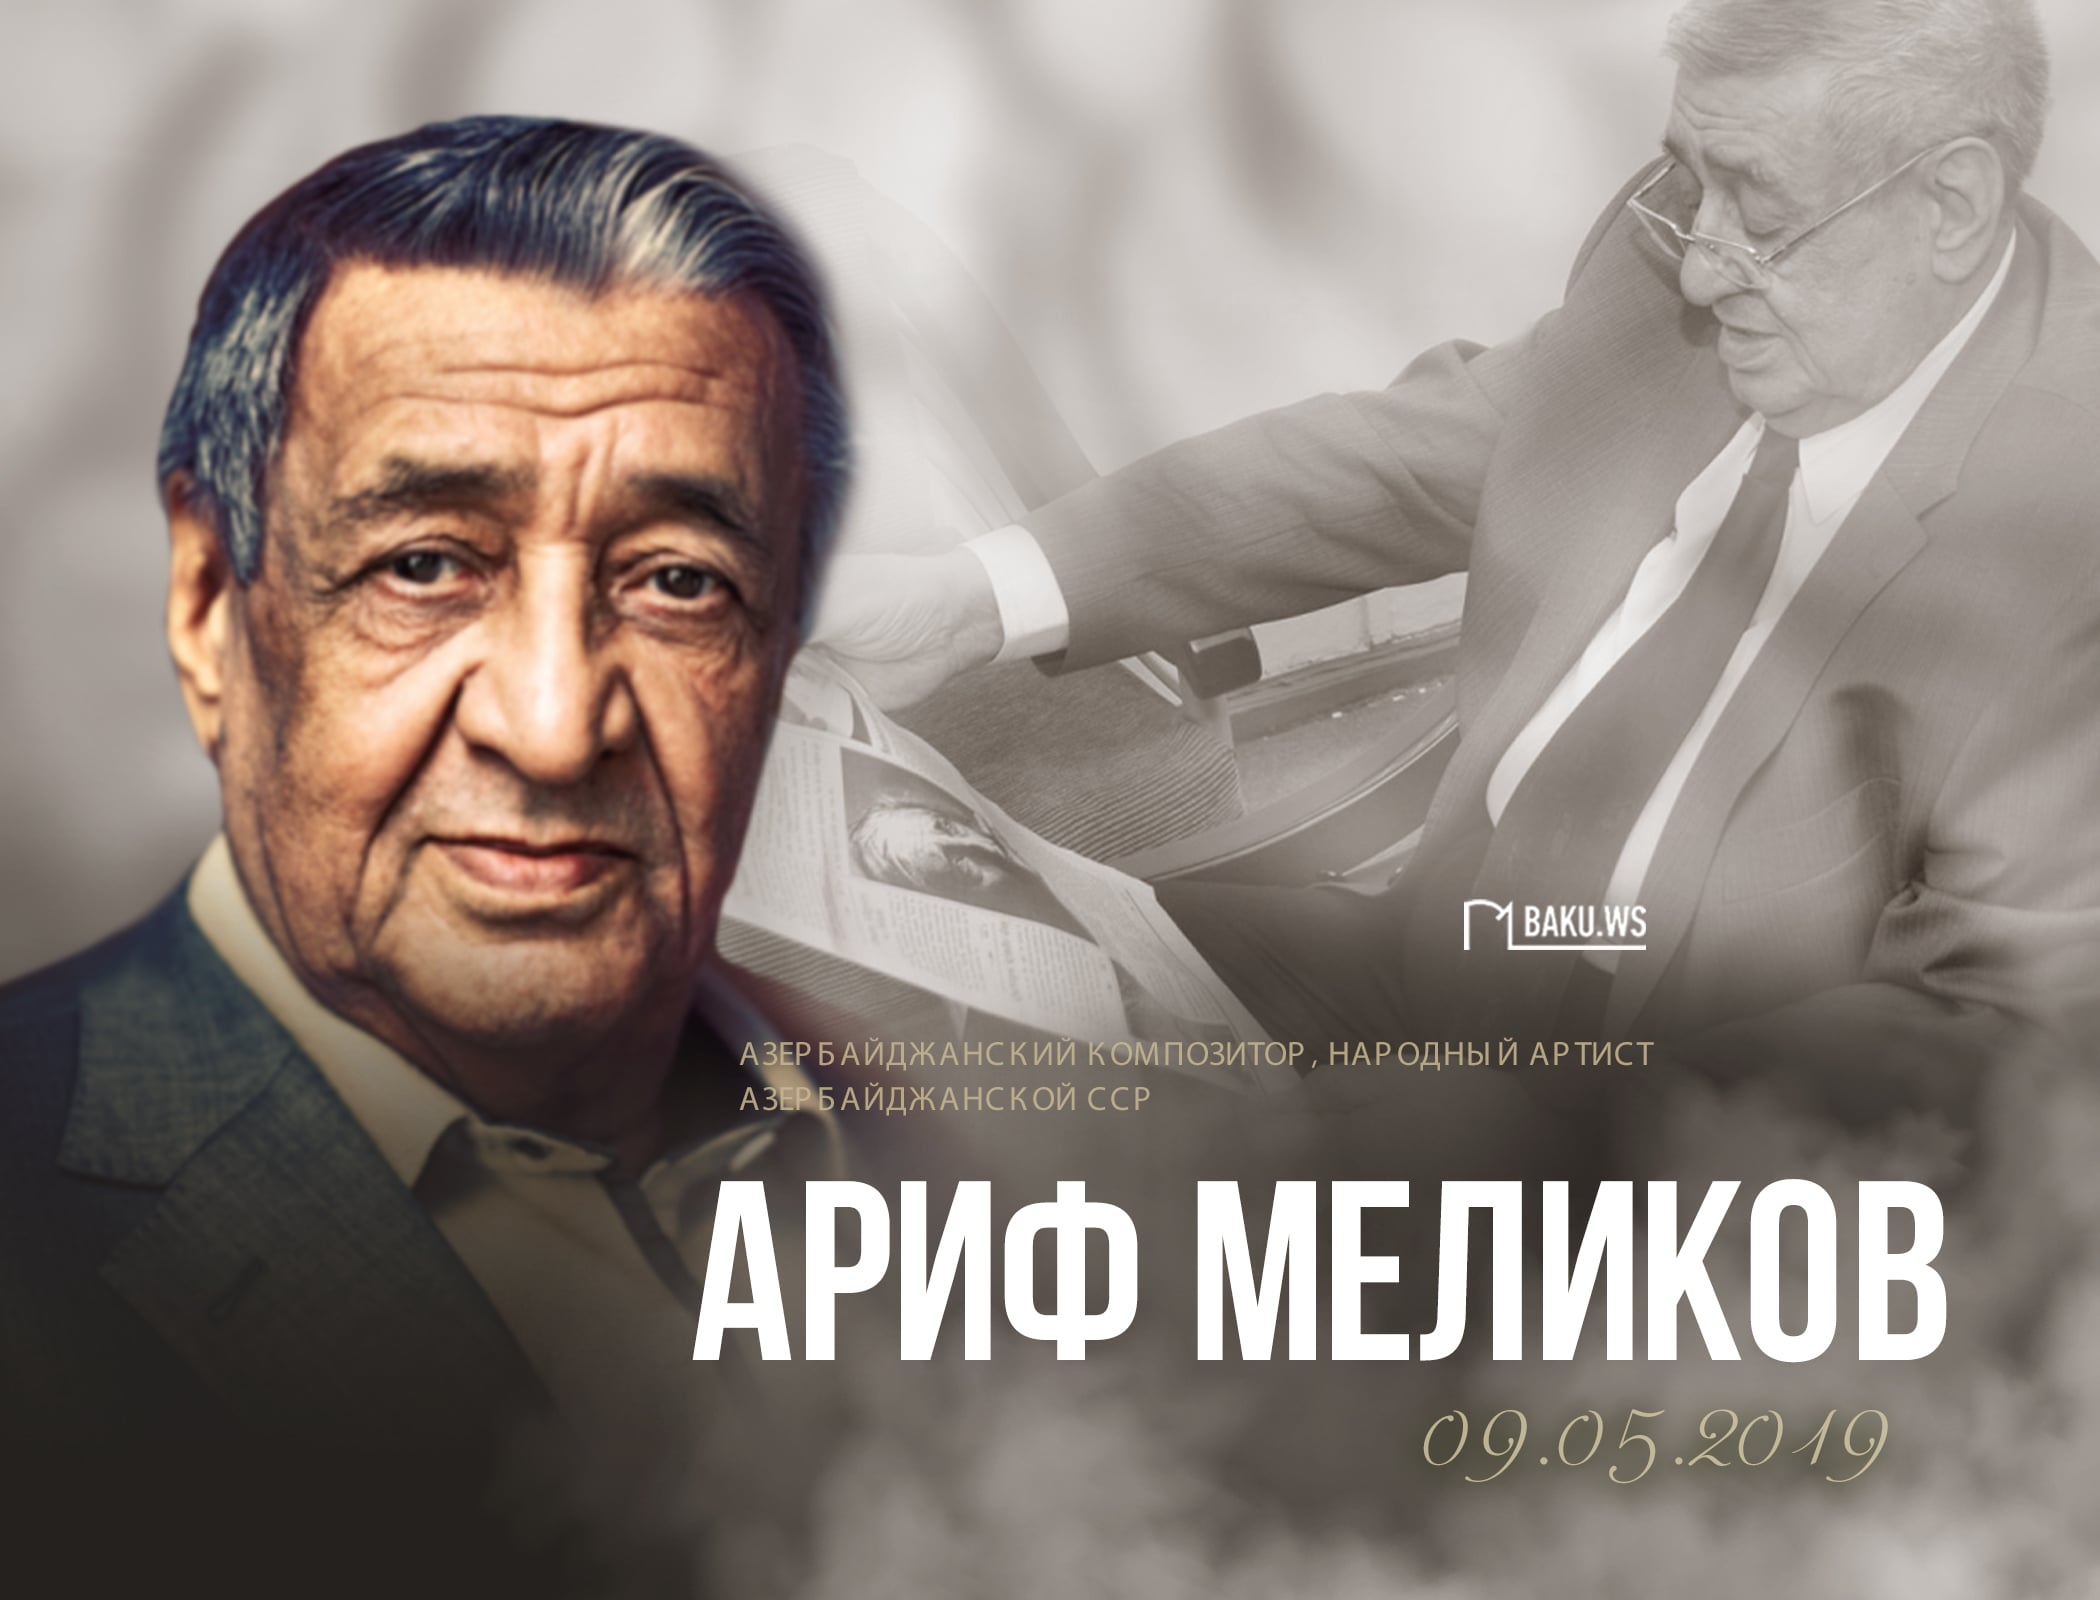 Сегодня день памяти выдающегося композитора Арифа Меликова